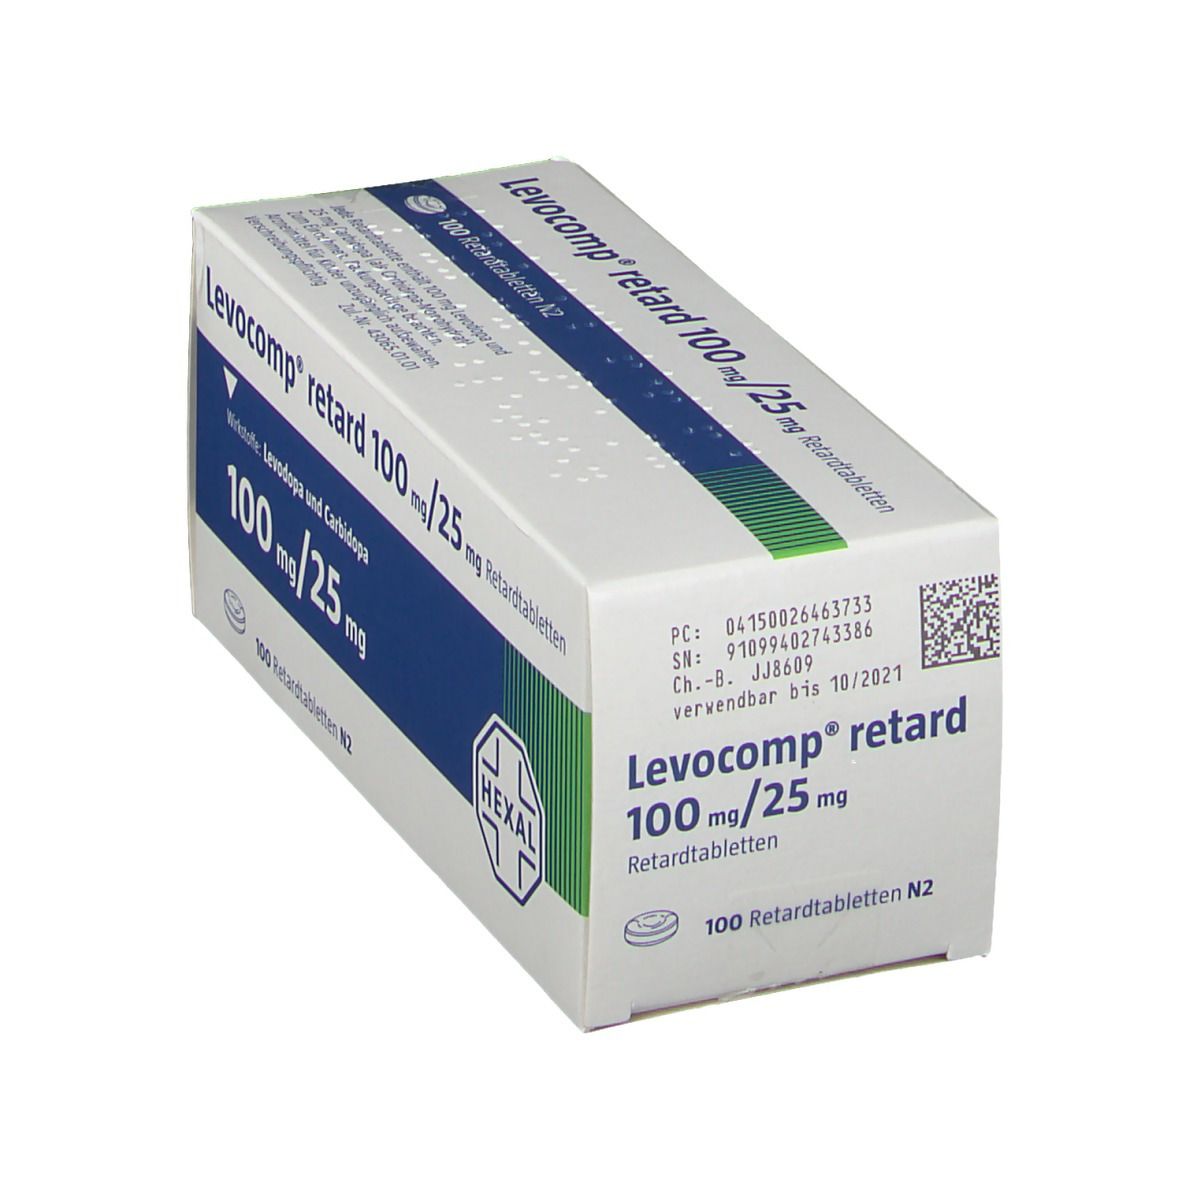 Levocomp® 100 mg/25 mg